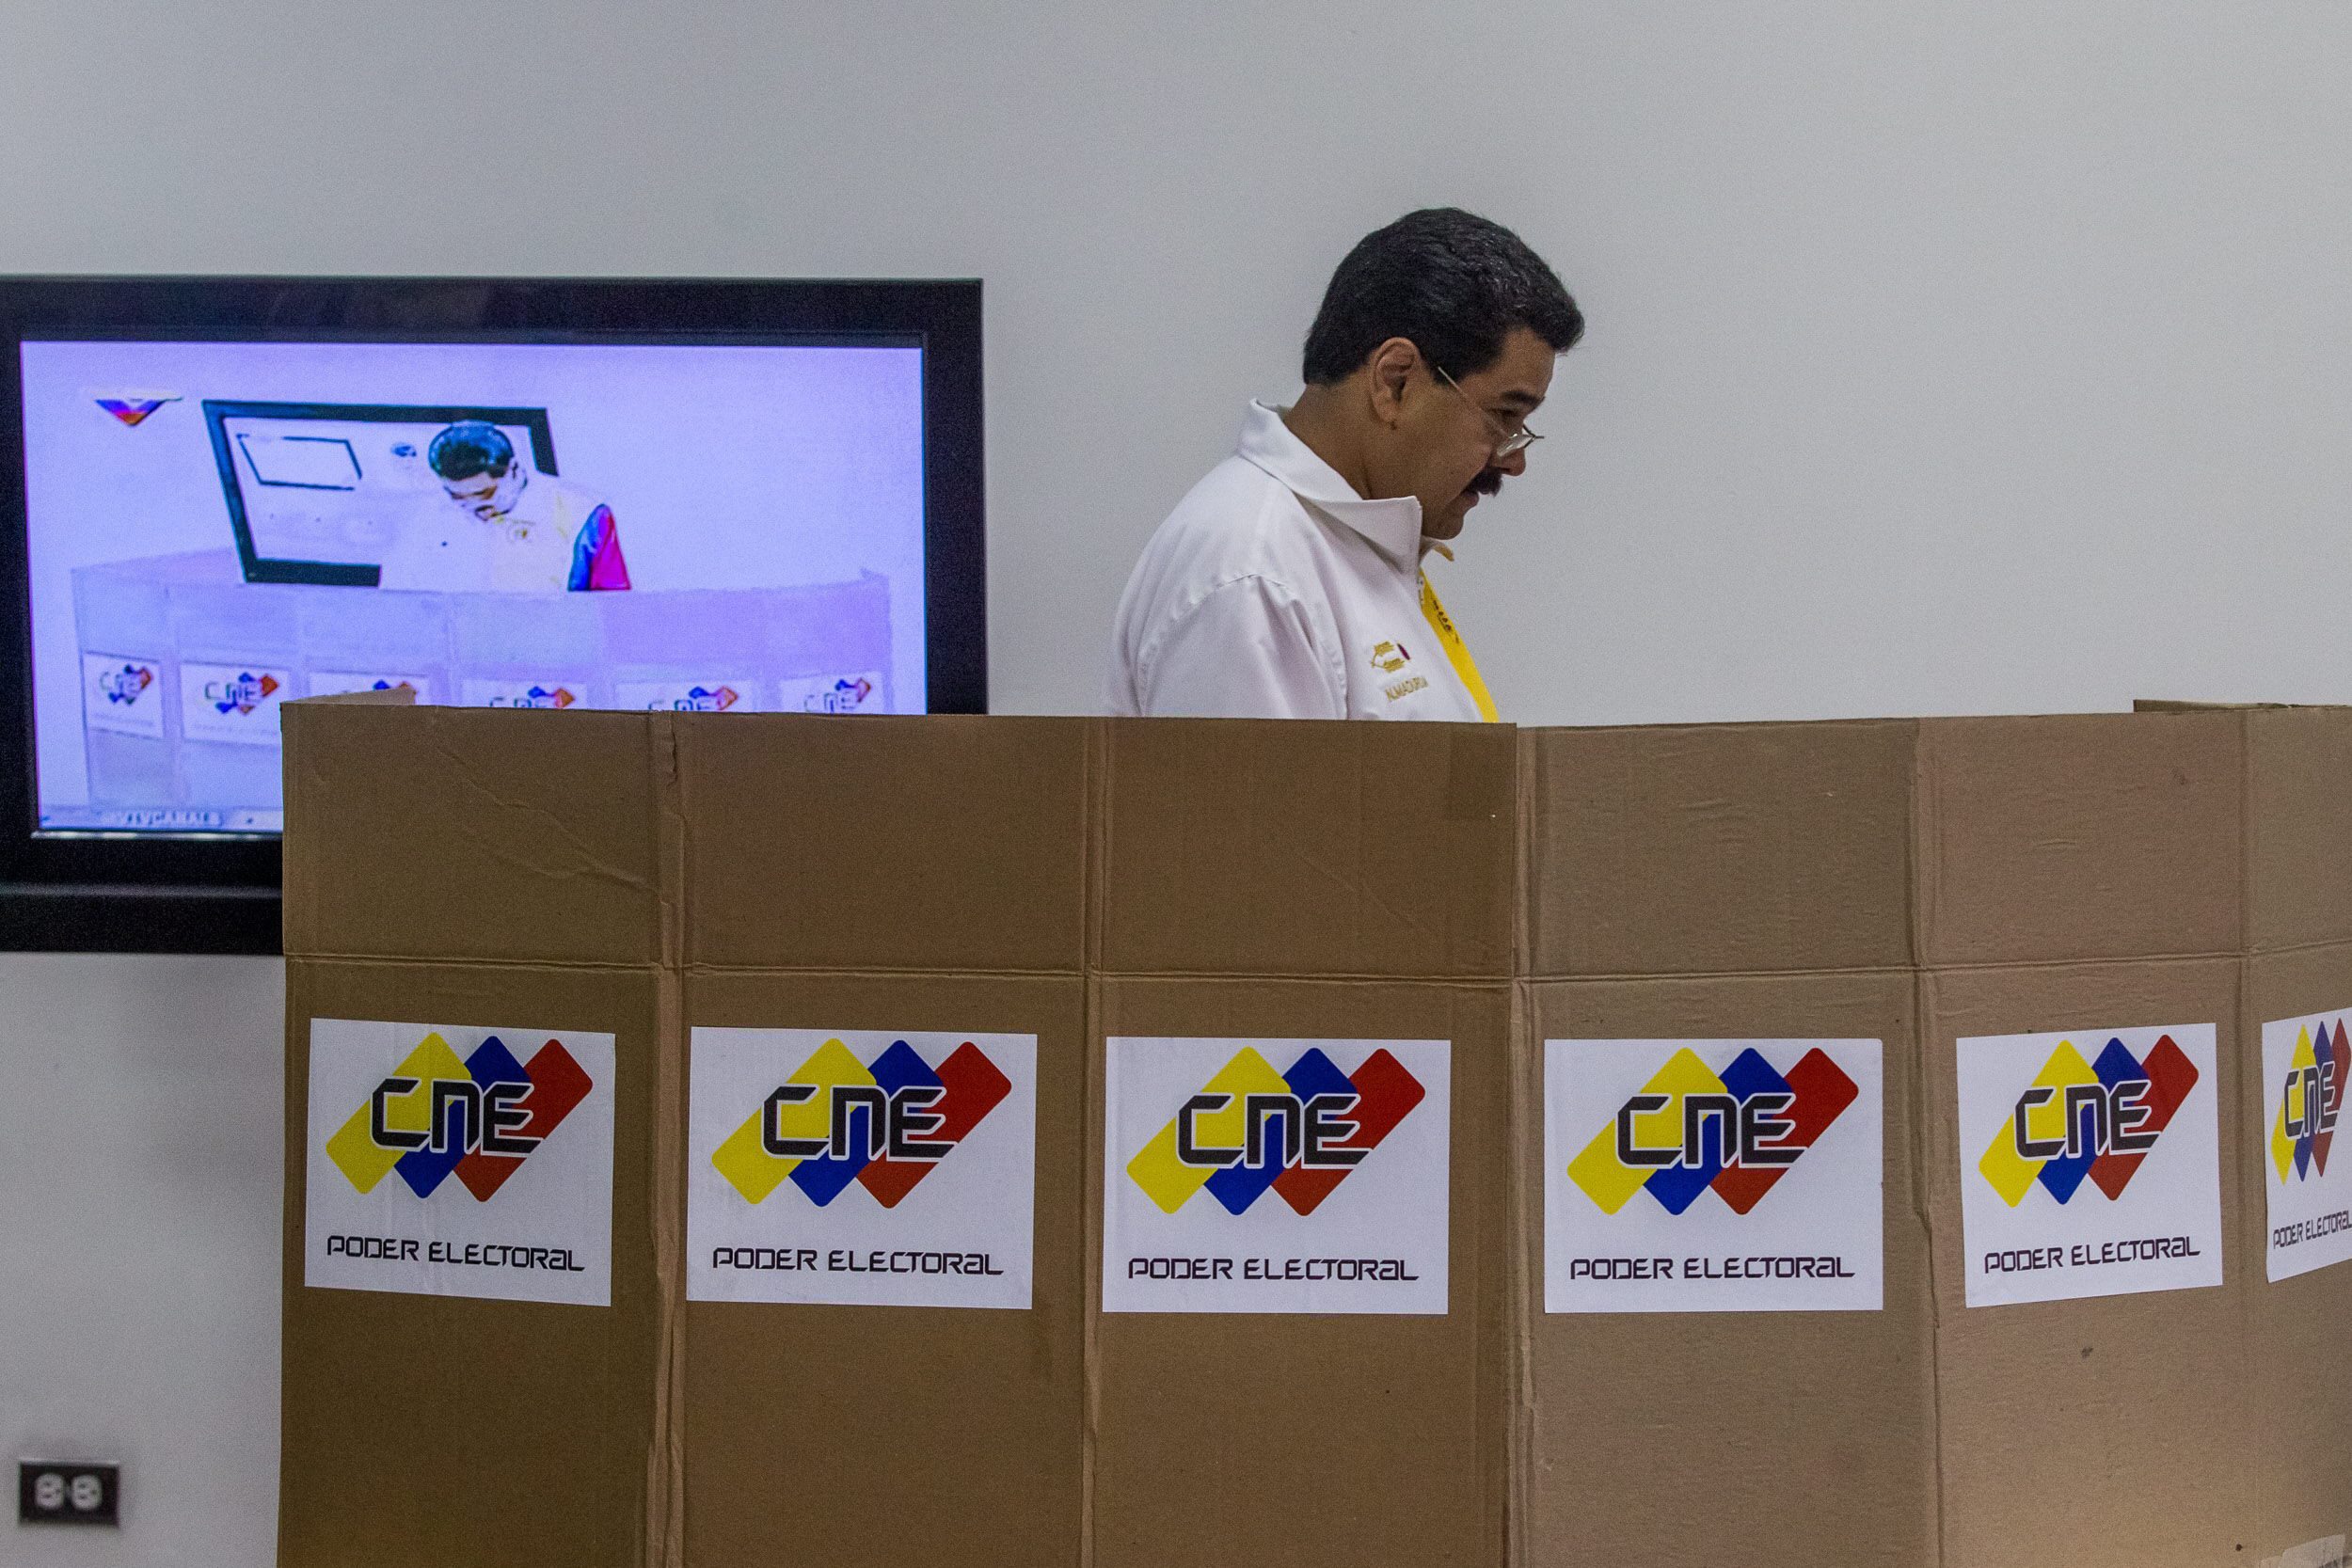 Άντεξε ο Νικολάς Μαδούρο στις δημοτικές εκλογές στη Βενεζουέλα